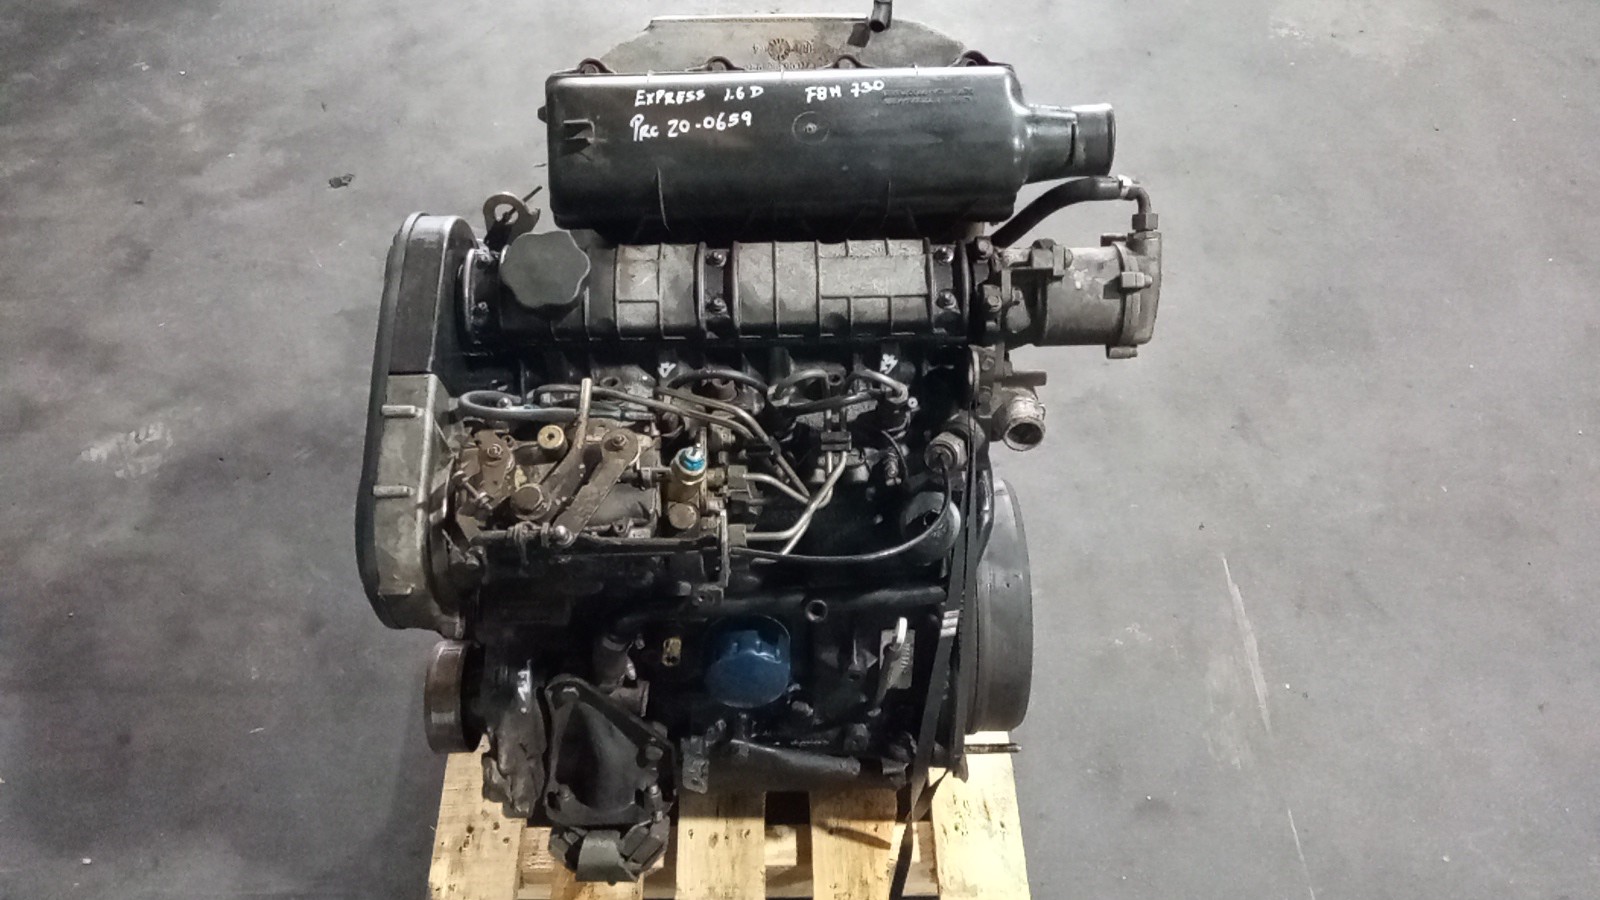 Entendendo as especificações de motores (MEC140)